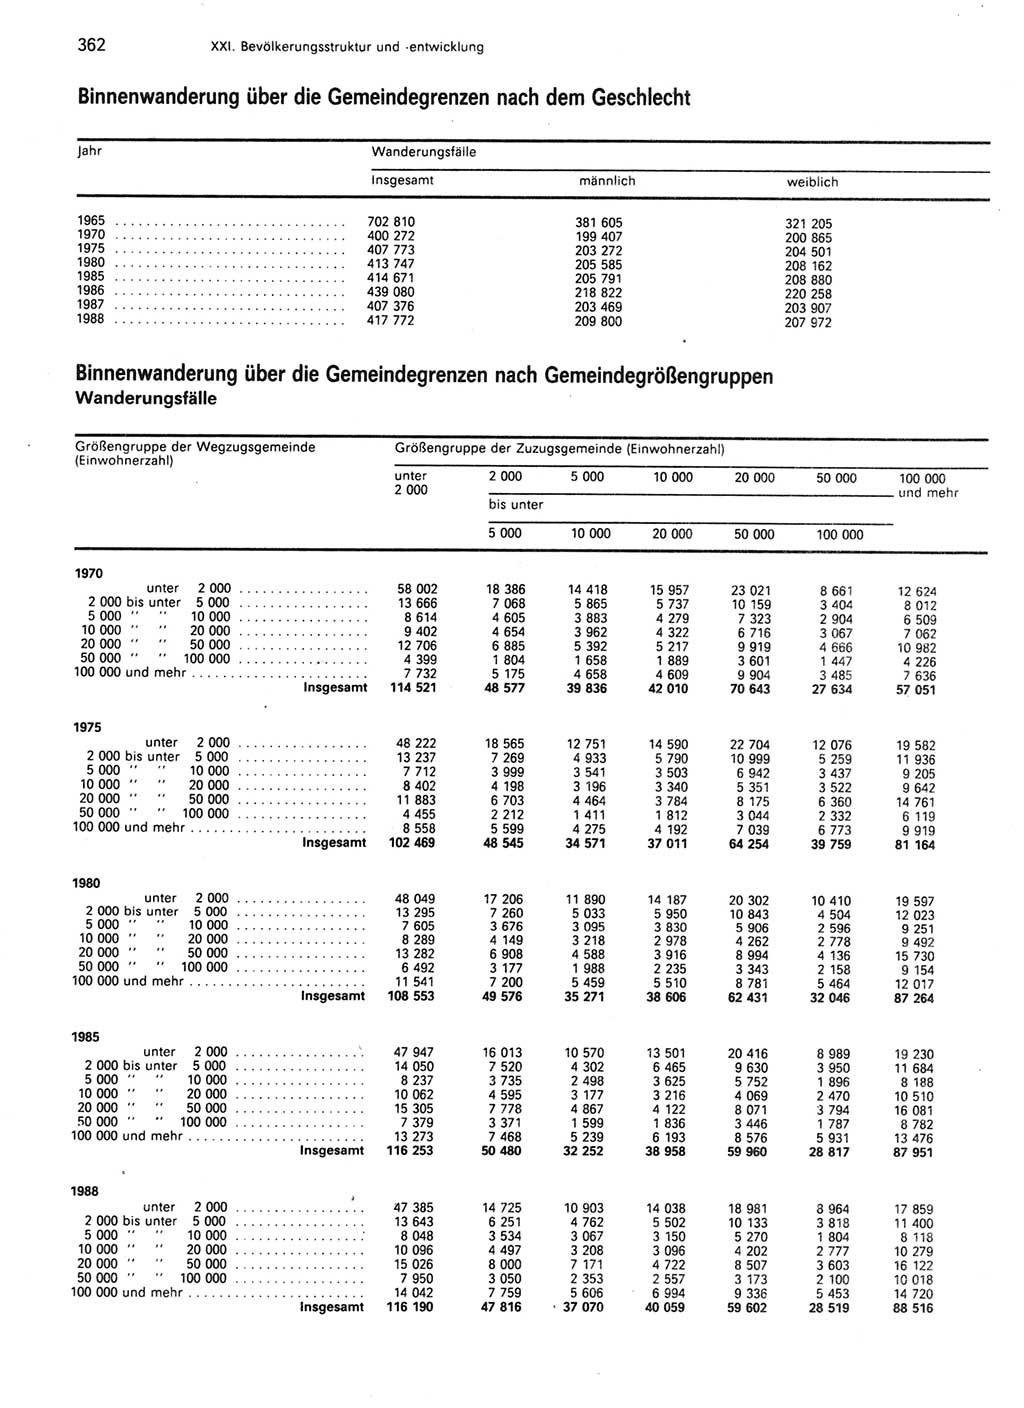 Statistisches Jahrbuch der Deutschen Demokratischen Republik (DDR) 1989, Seite 362 (Stat. Jb. DDR 1989, S. 362)